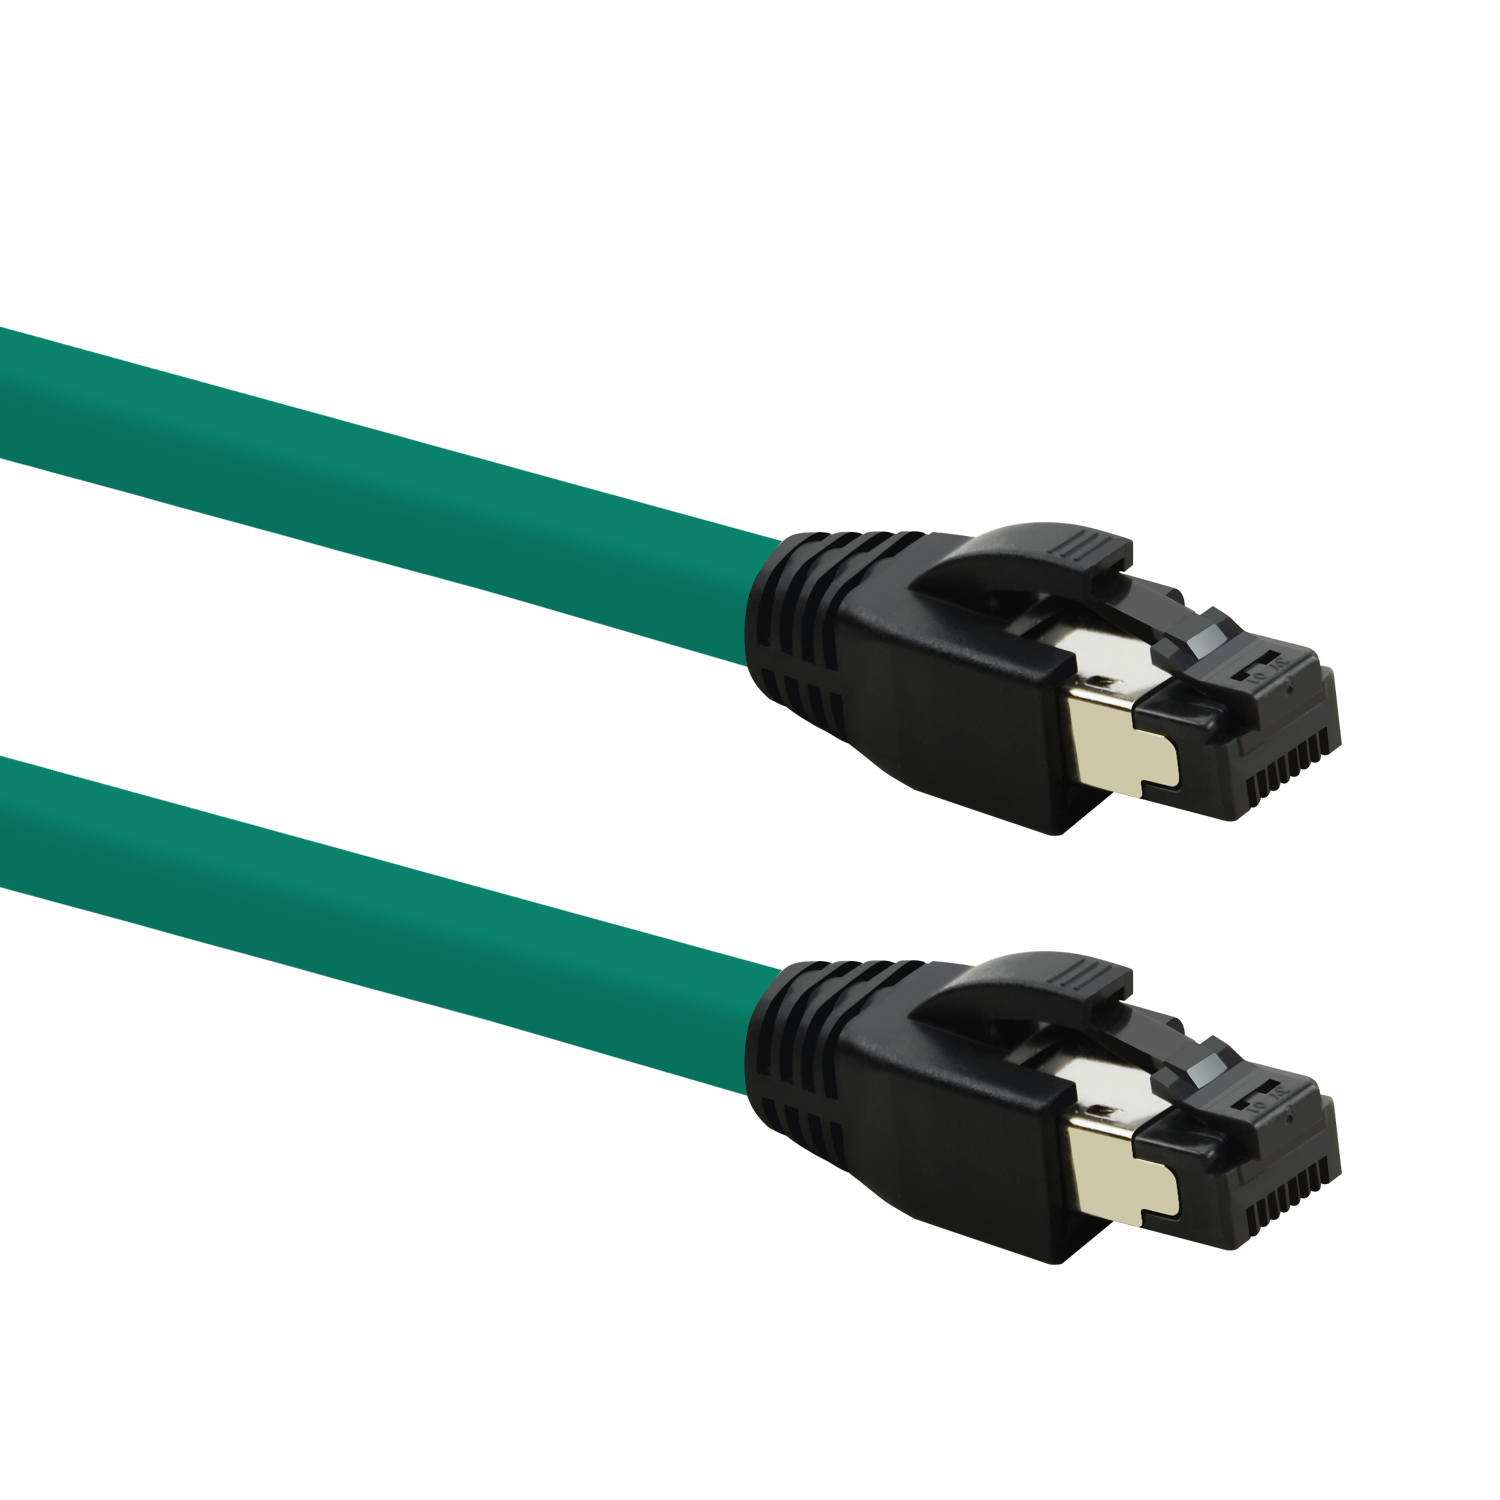 TPFNET 10m Patchkabel / 10 Netzwerkkabel S/FTP grün, 40 GBit, m Netzwerkkabel